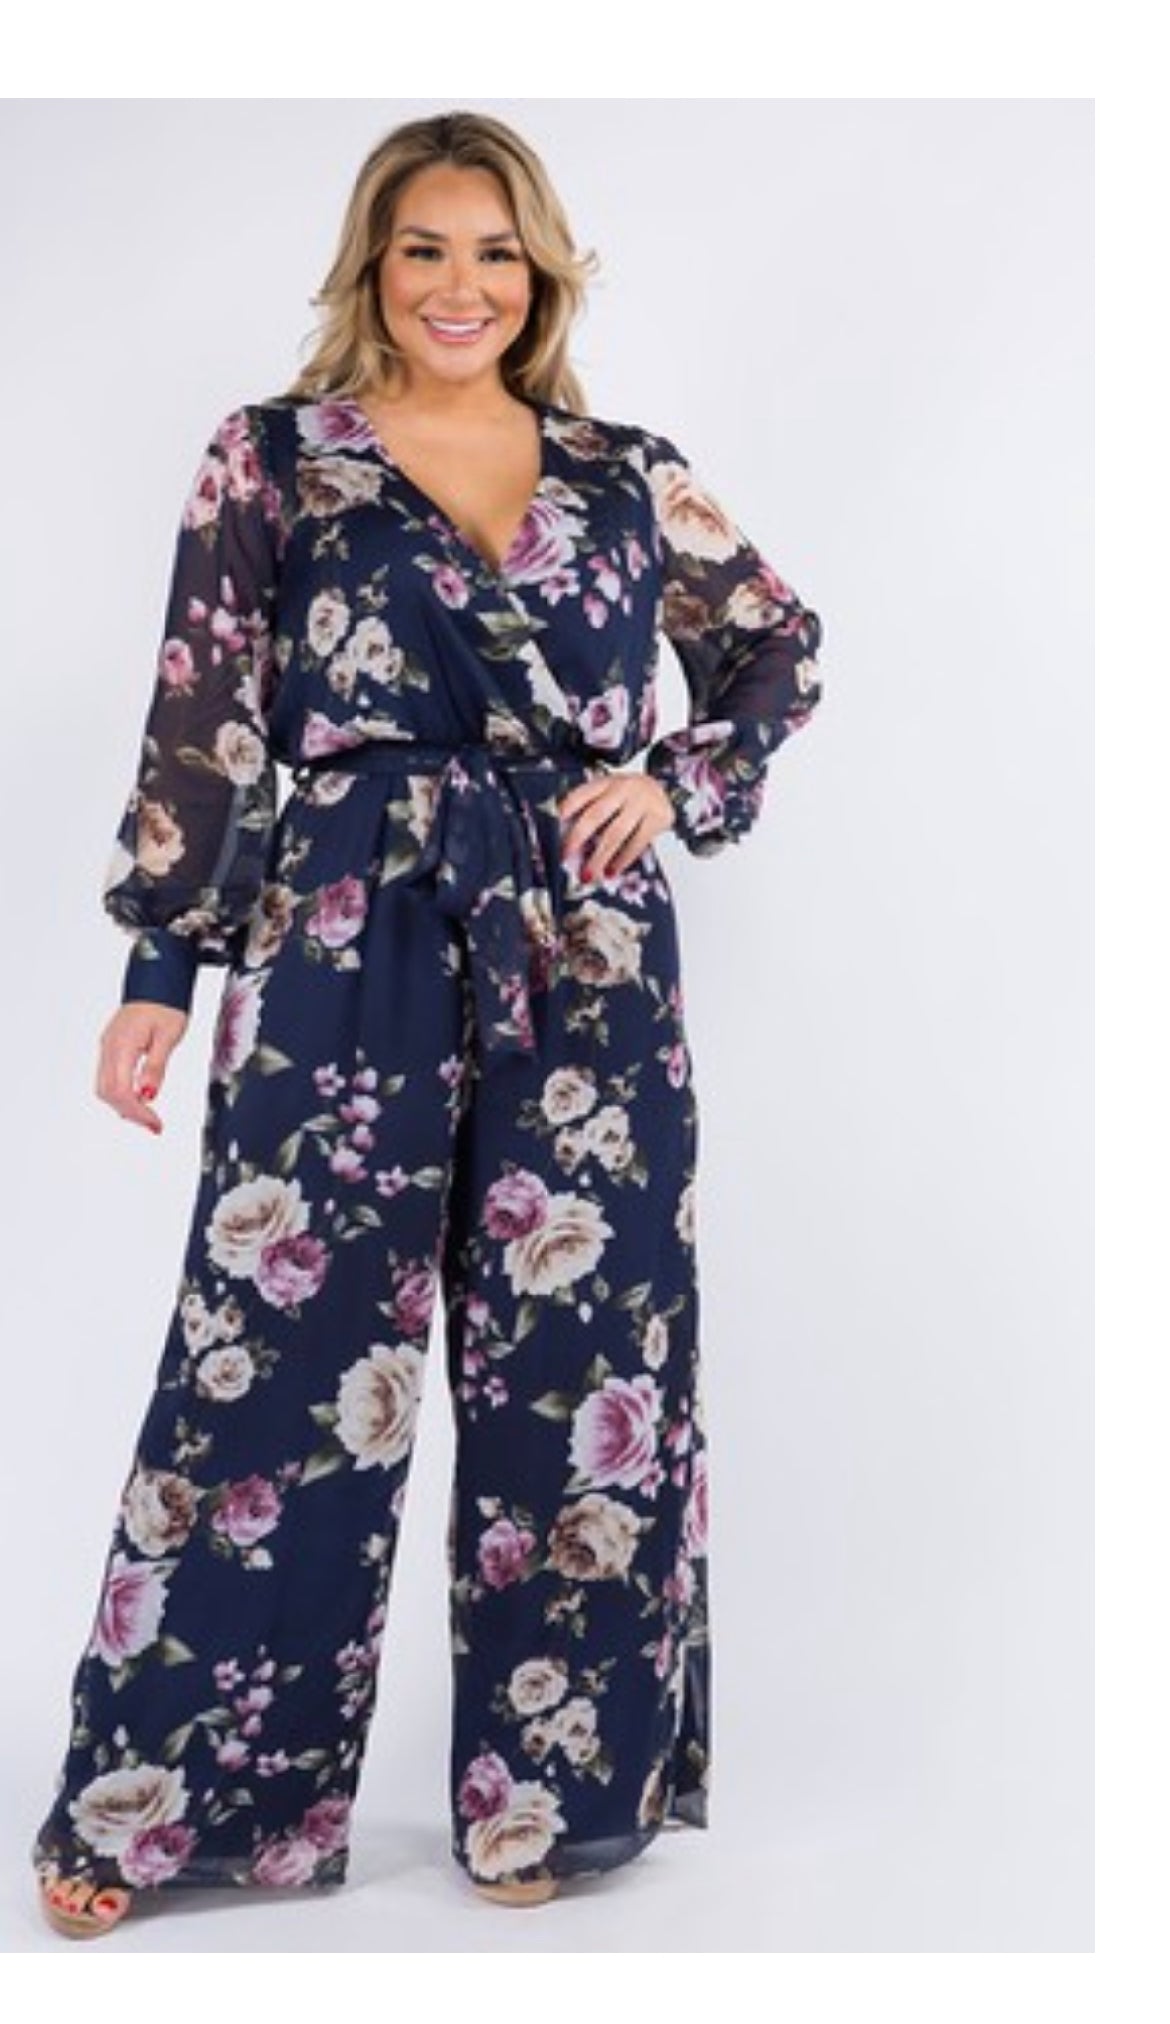 Floral print jumpsuit